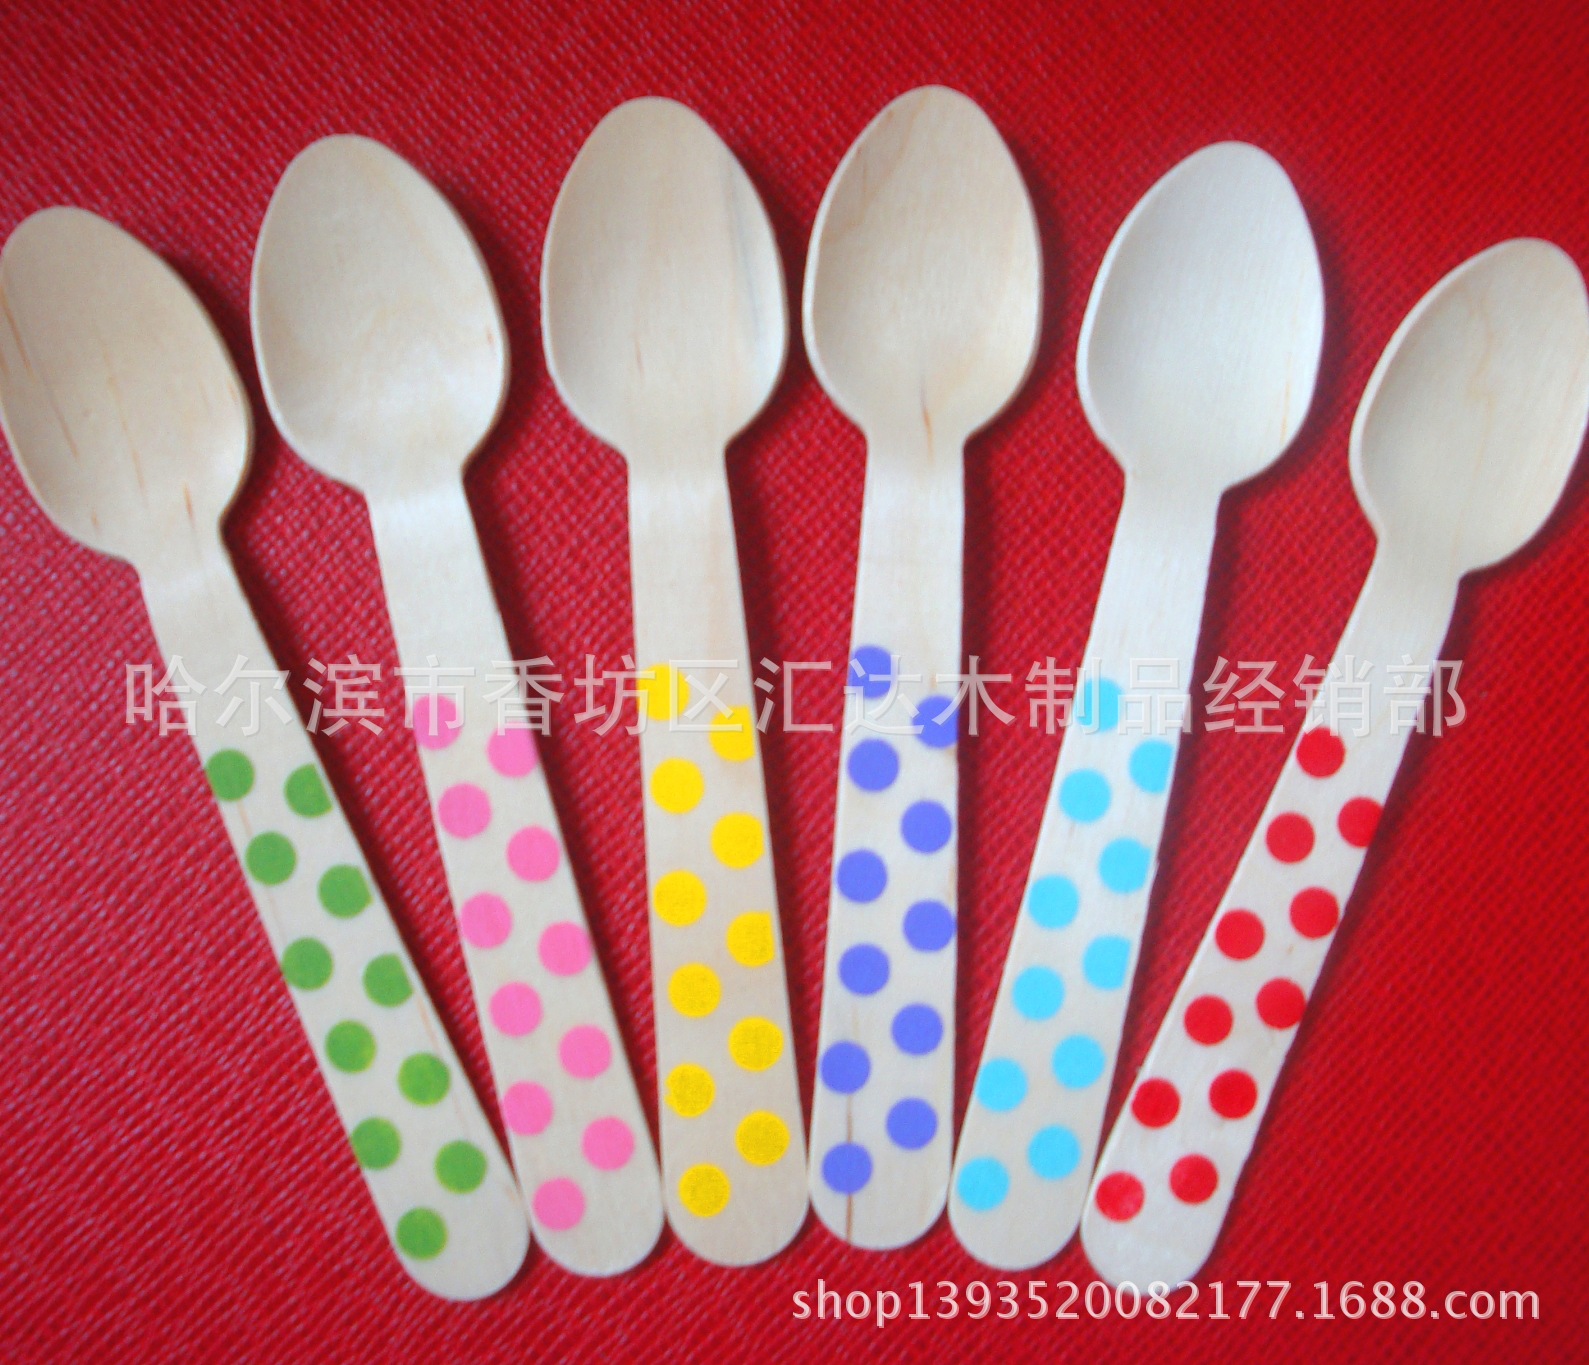 厂家供应木勺 彩色儿童木勺  木质木刀叉勺  一次性彩色木勺子